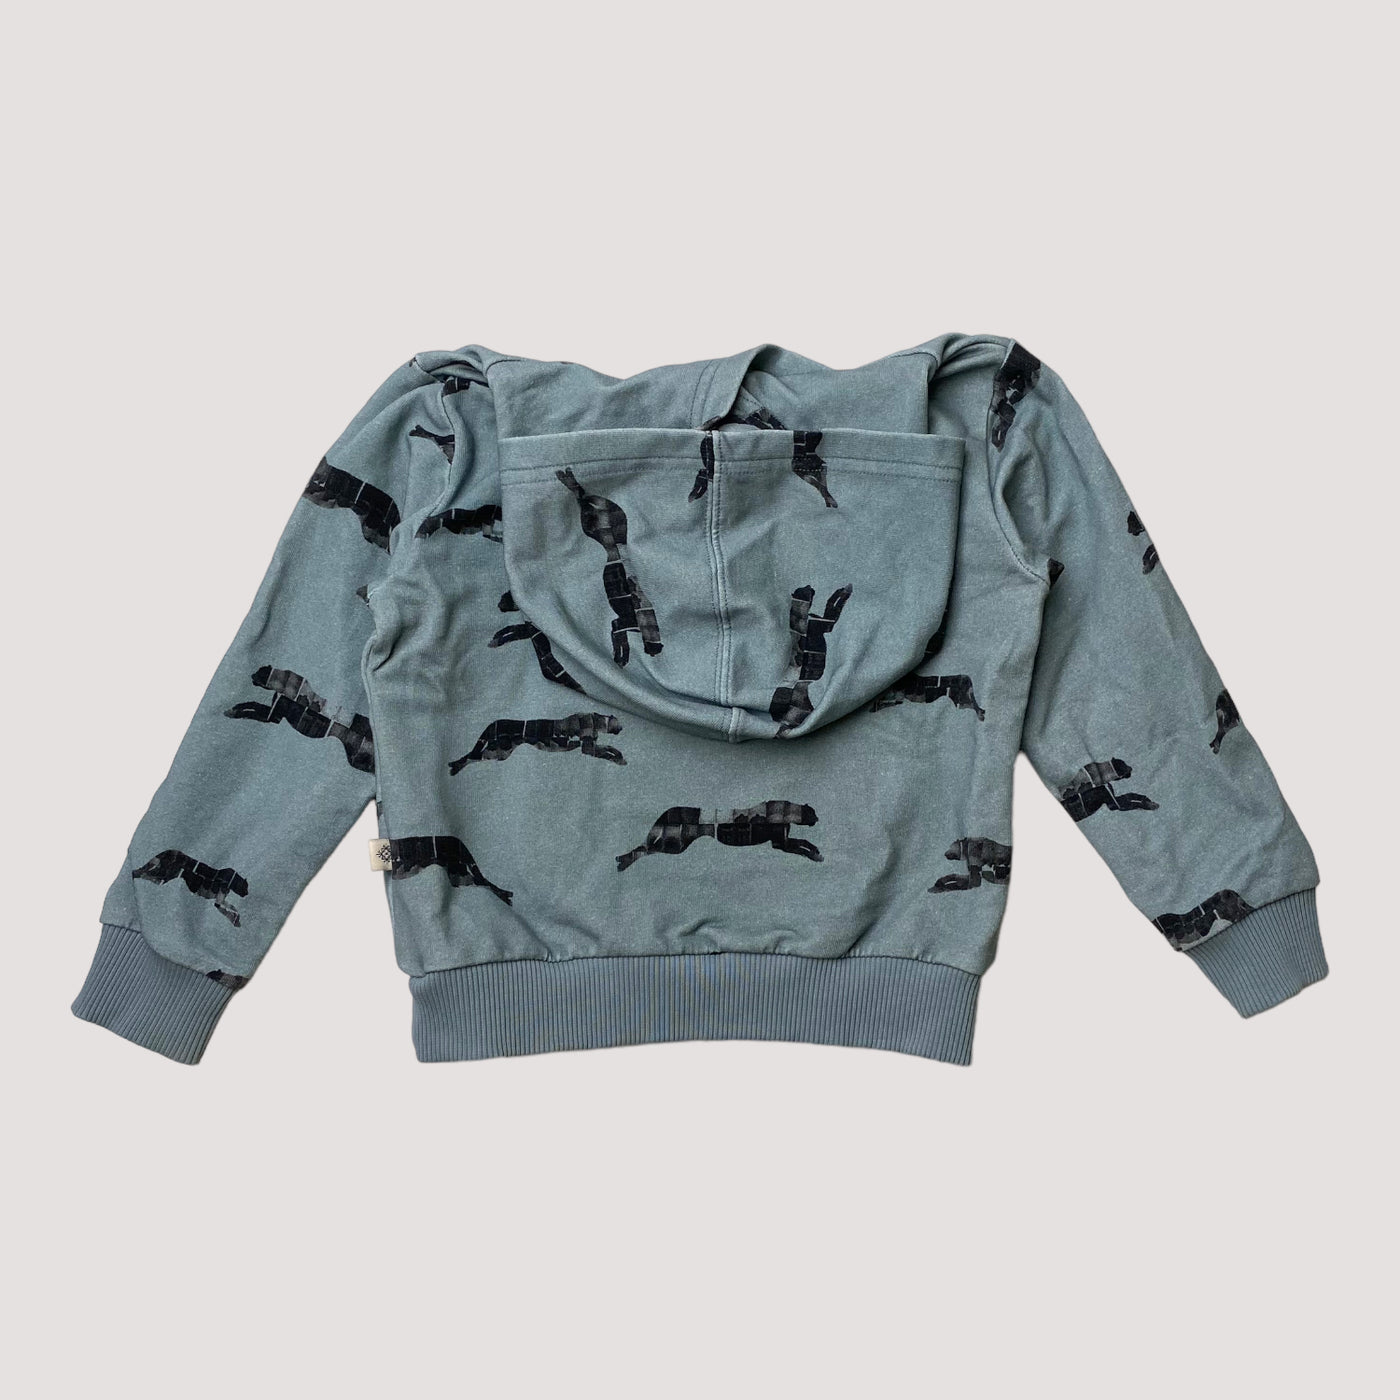 Kaiko hooded sweatshirt, panther | 74/80cm